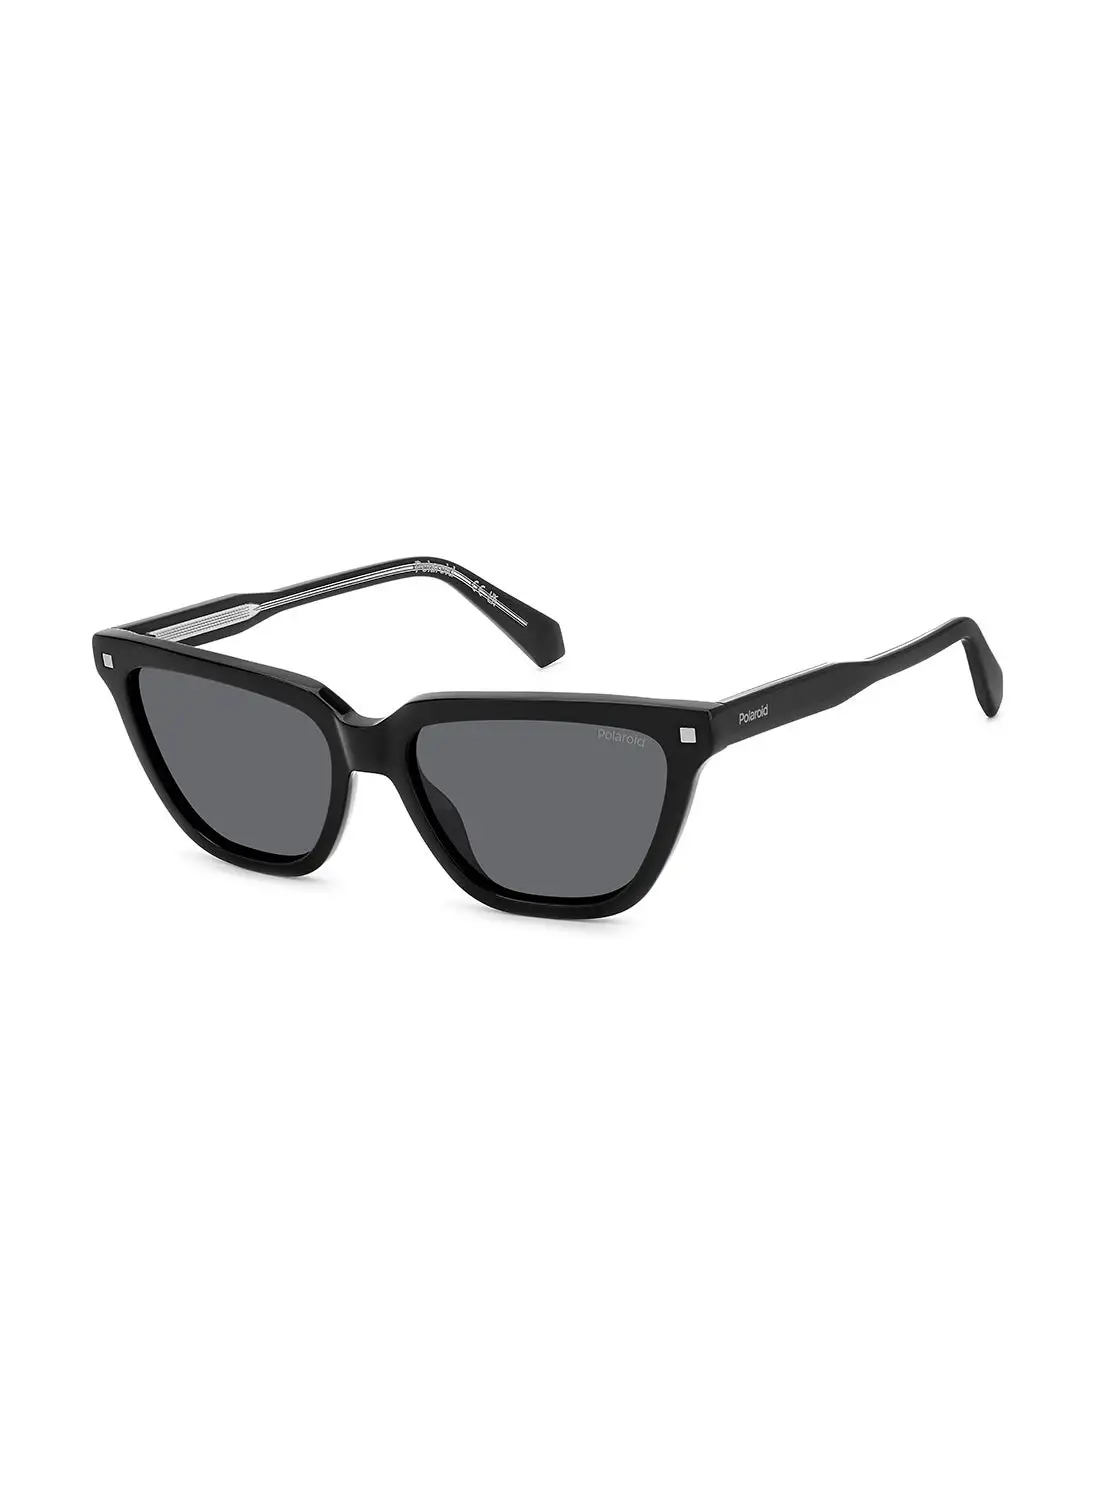 Polaroid Women's Polarized Rectangular Sunglasses - Pld 4157/S/X Black Millimeter - Lens Size: 55 Mm